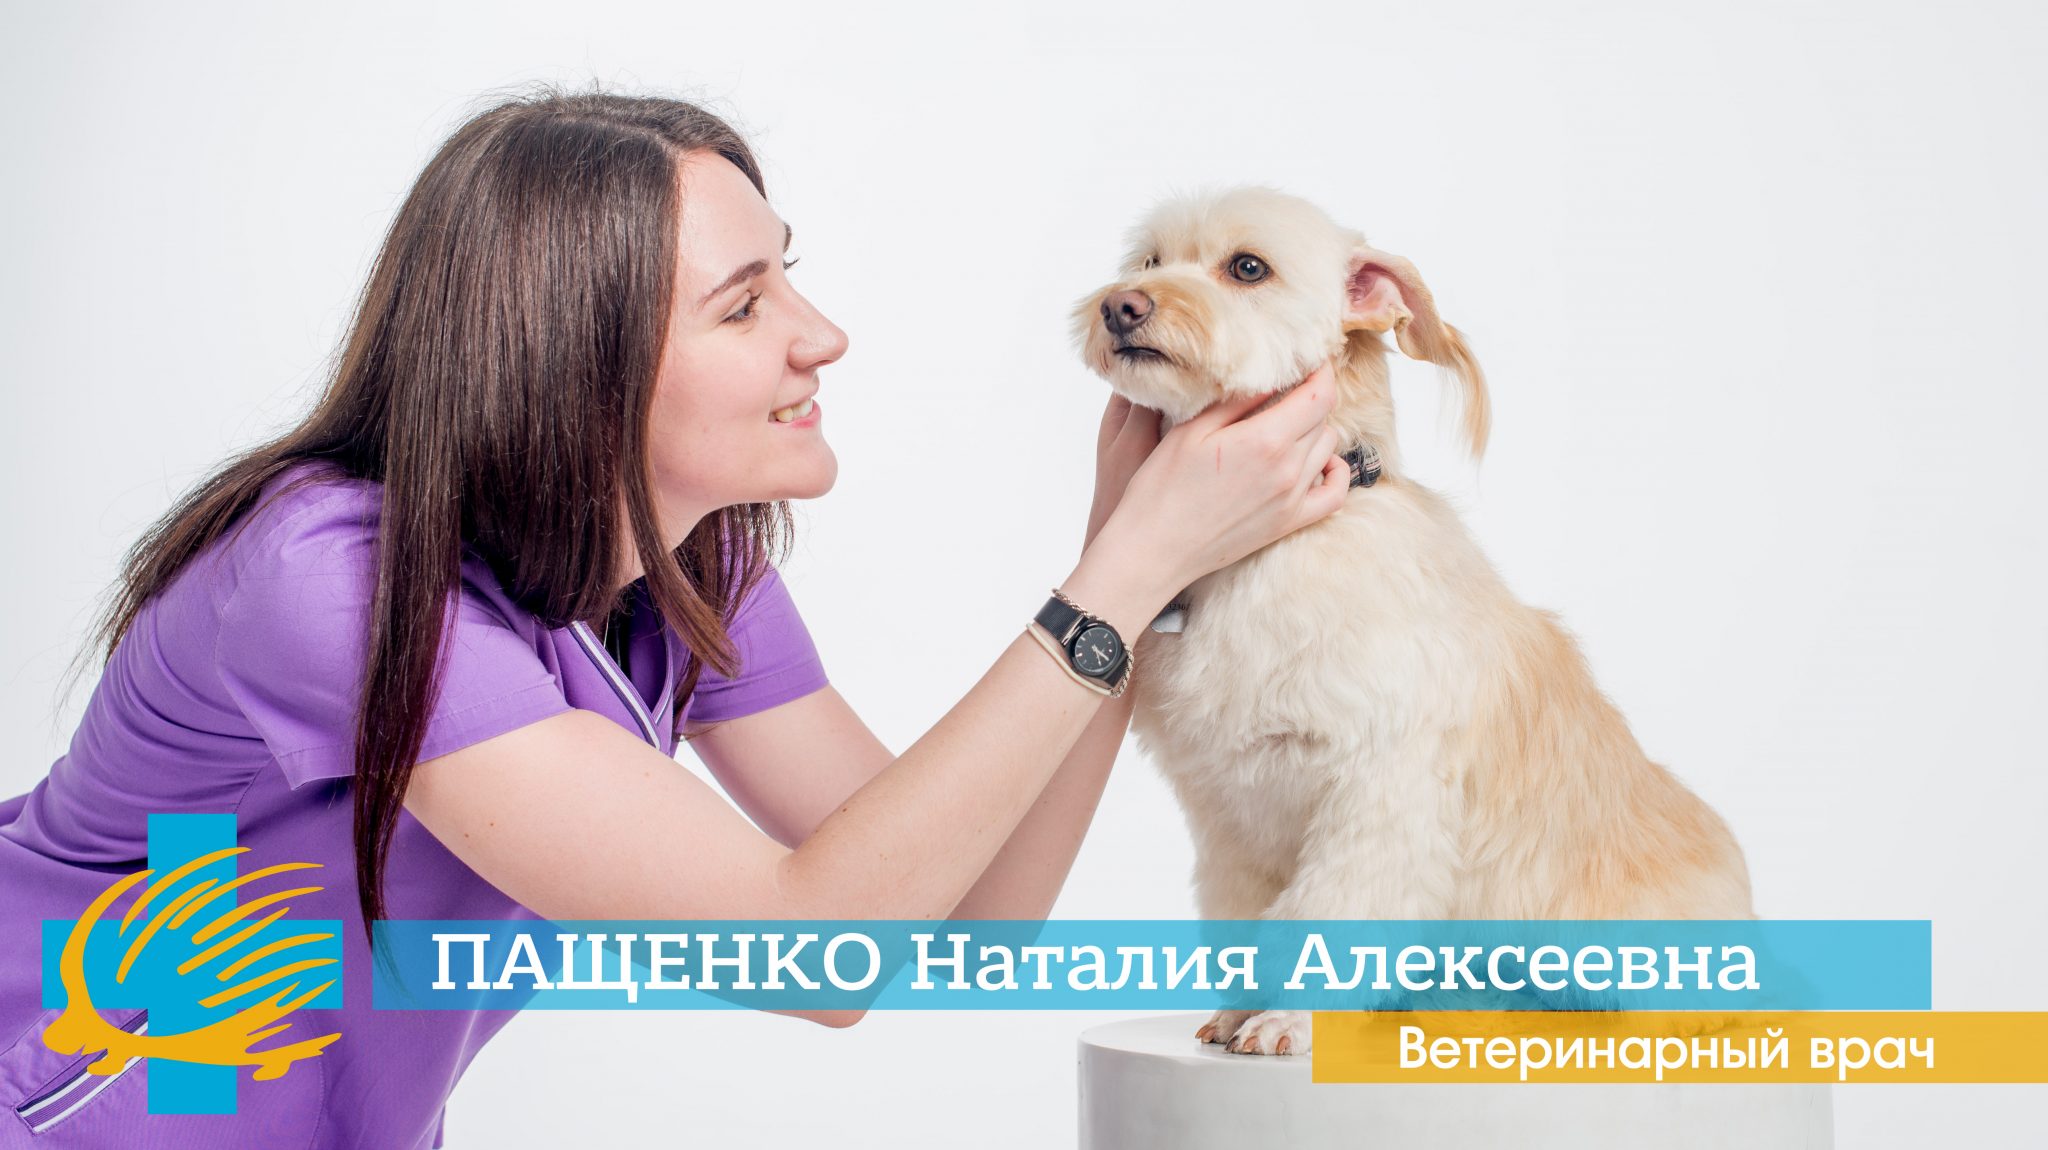 Ветеринарный врач Пащенко Н. А. ведет прием в ветеринарной клинике Родентовет